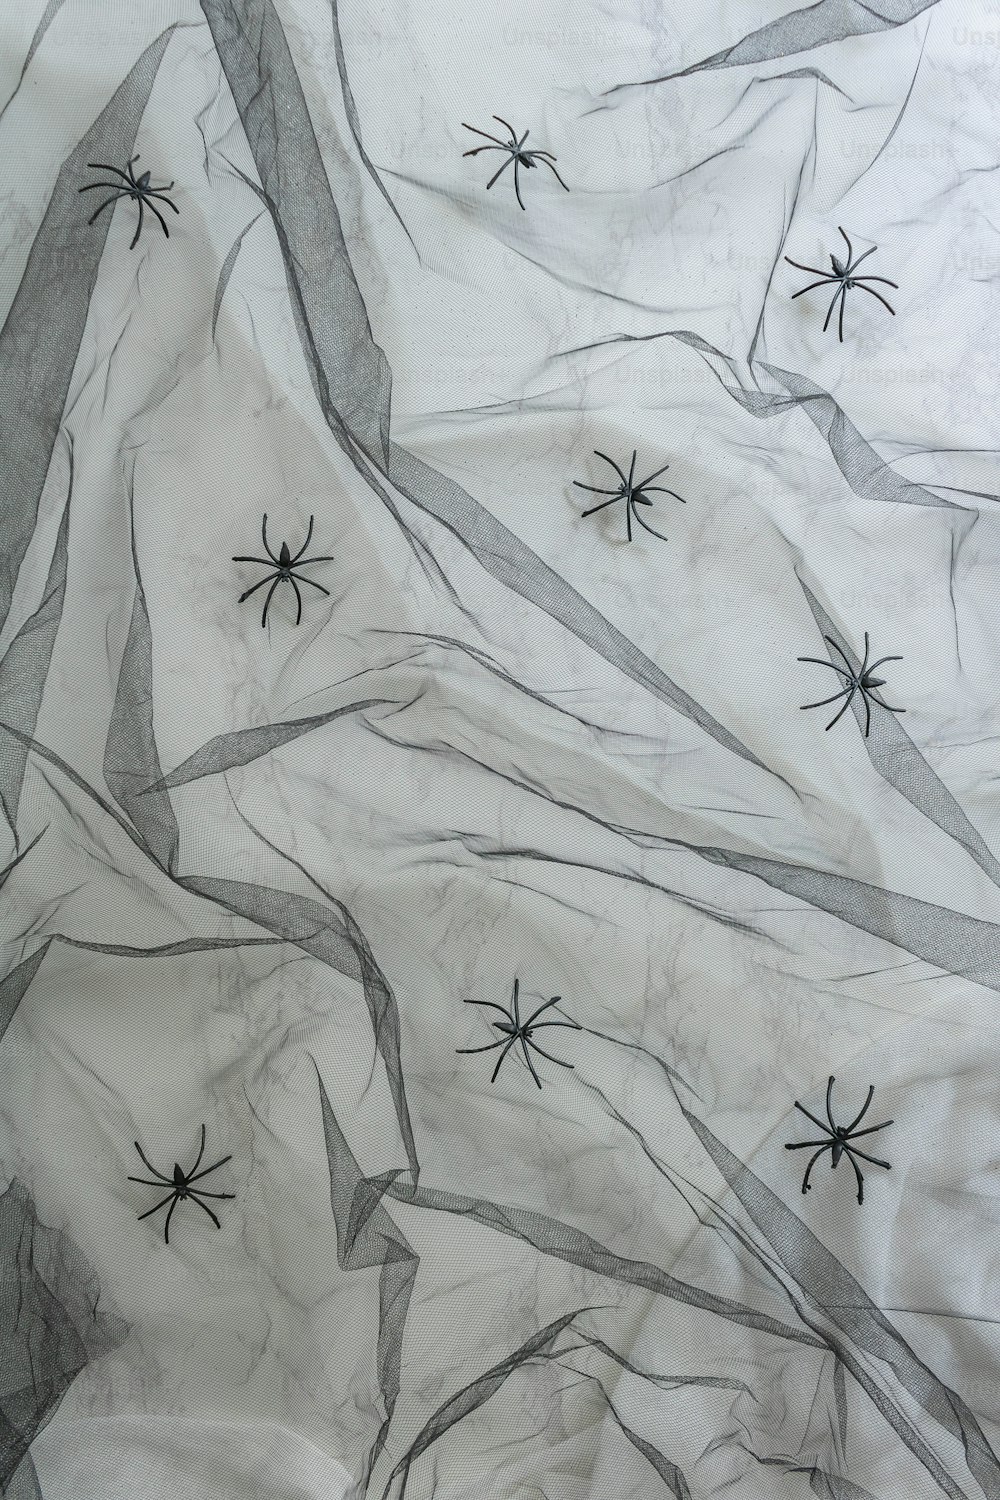 Eine Schwarz-Weiß-Zeichnung von Spinnennetzen